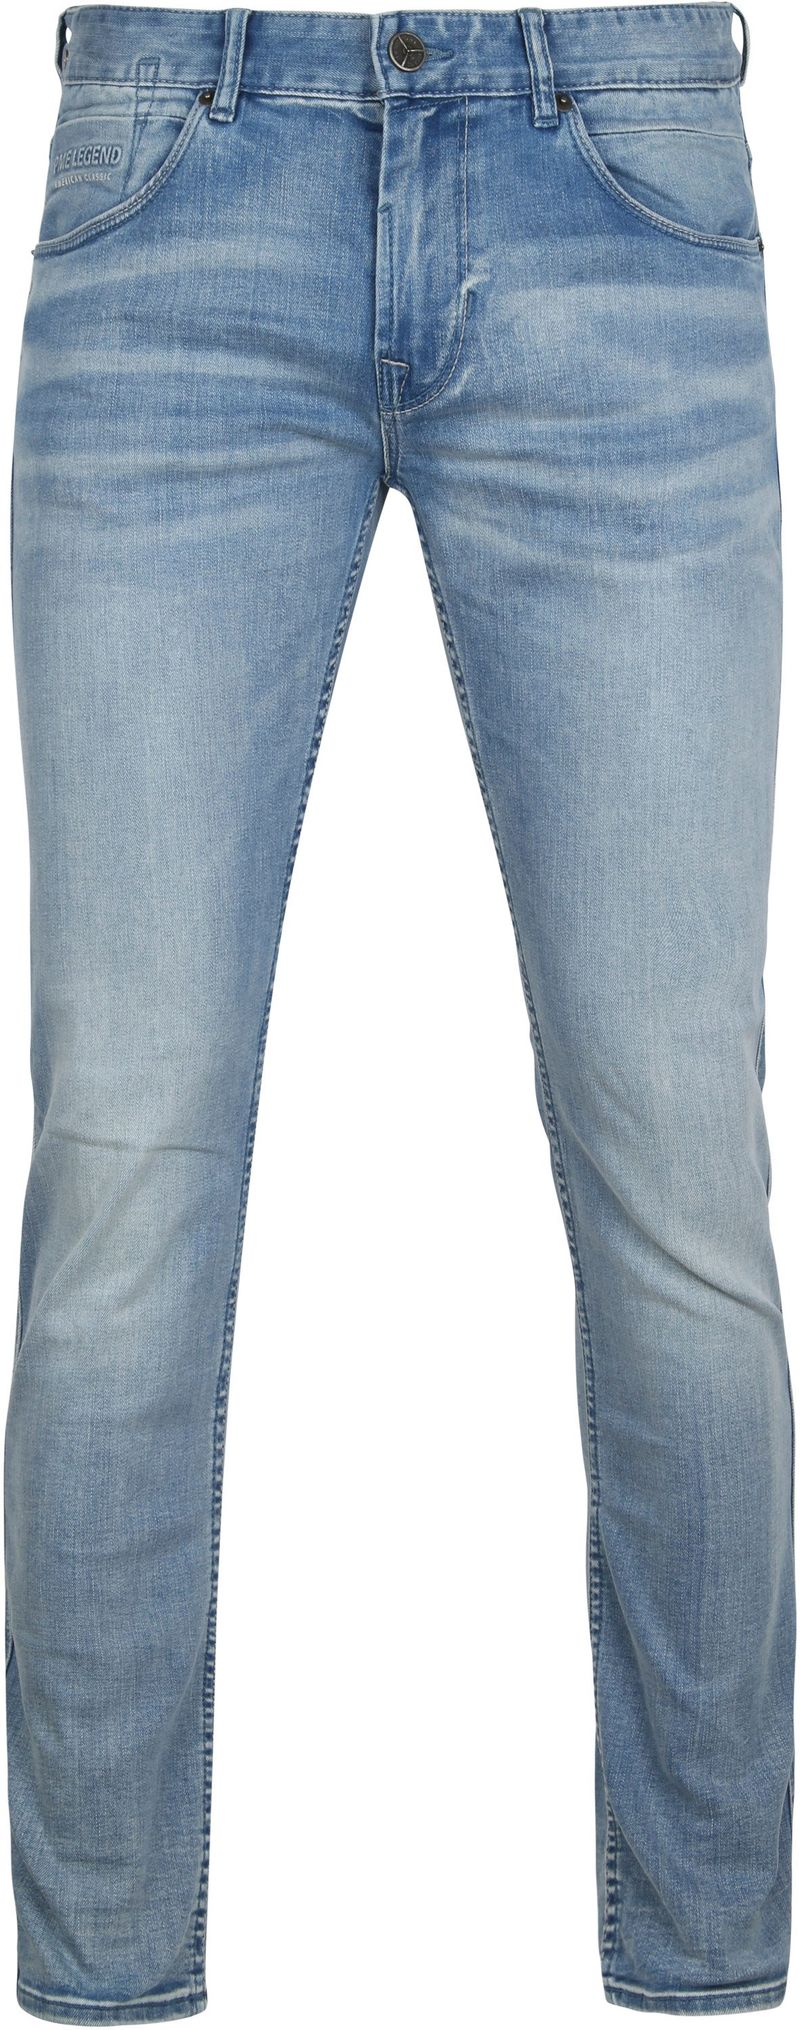 PME Legend Nightflight Jeans Blau - Größe W 29 - L 30 günstig online kaufen